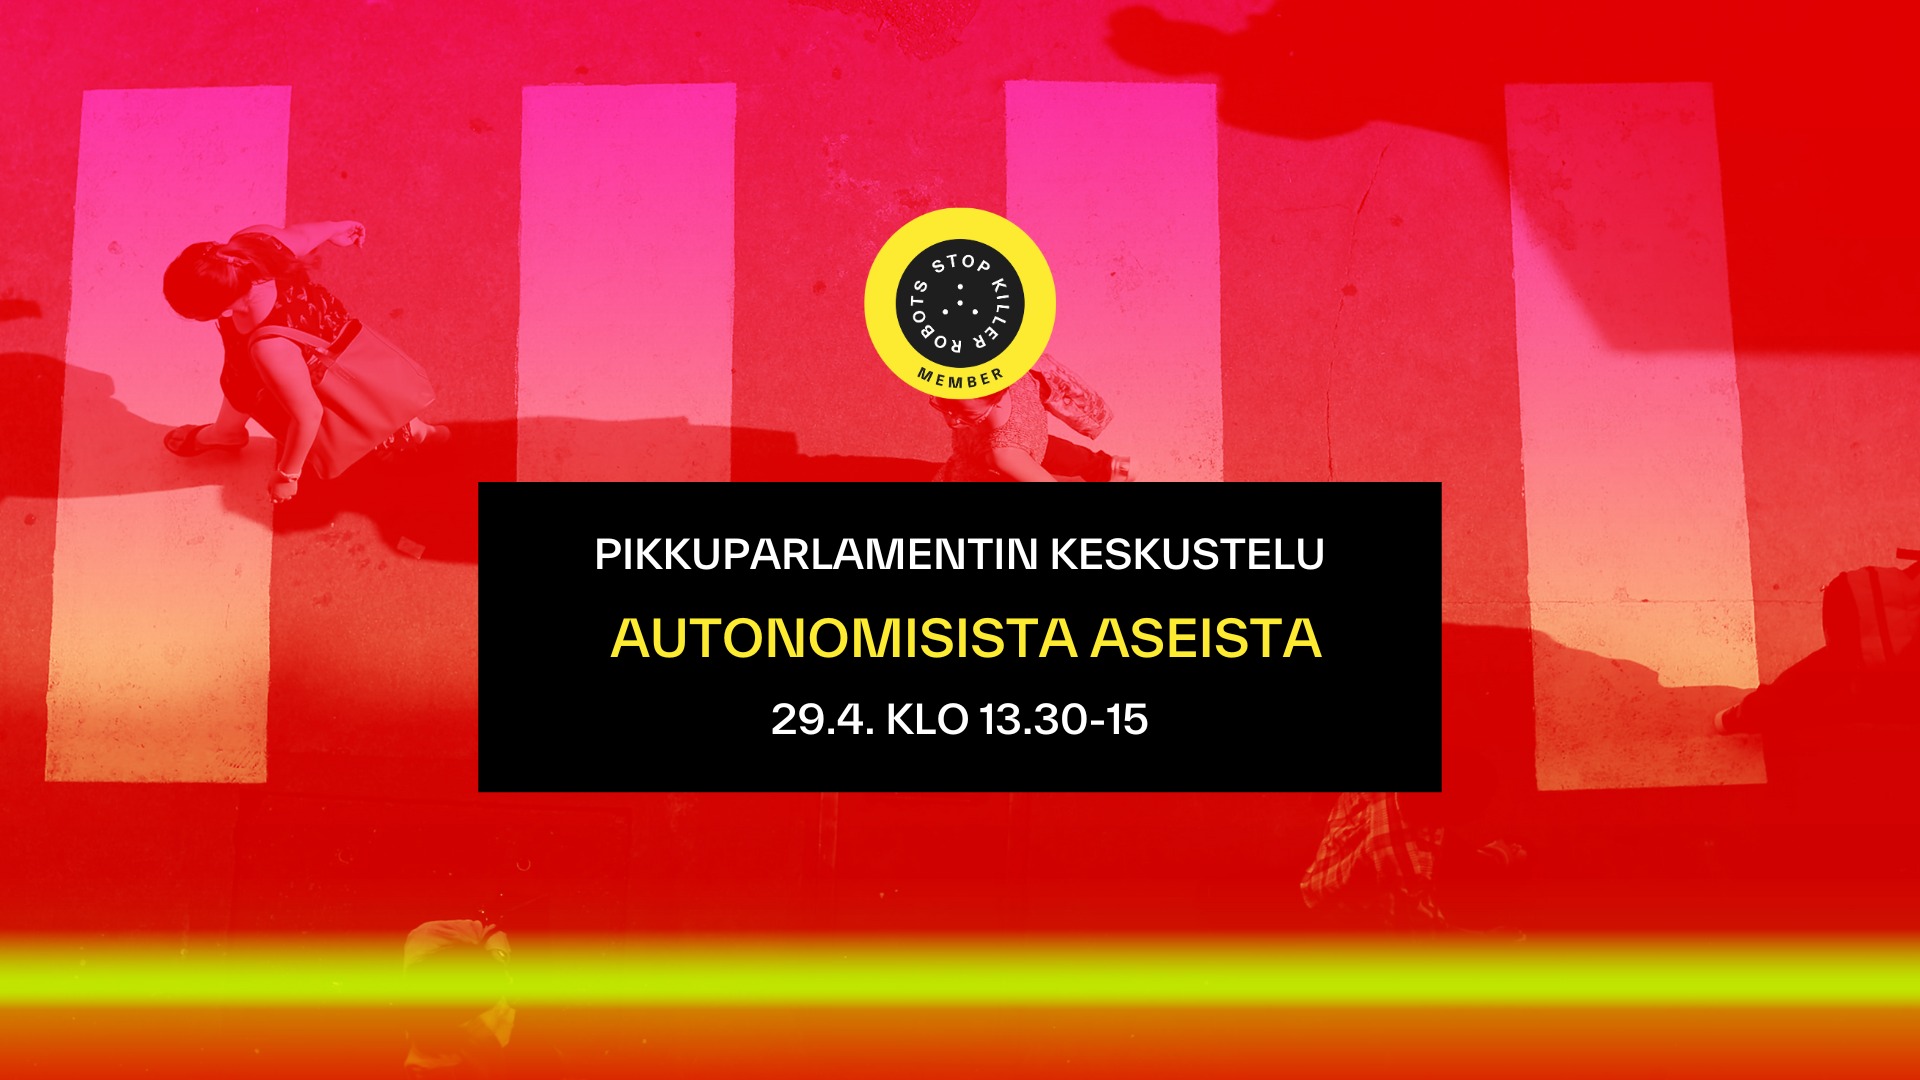 Pikkuparlamentin keskustelu autonomisista aseista • Helsinki